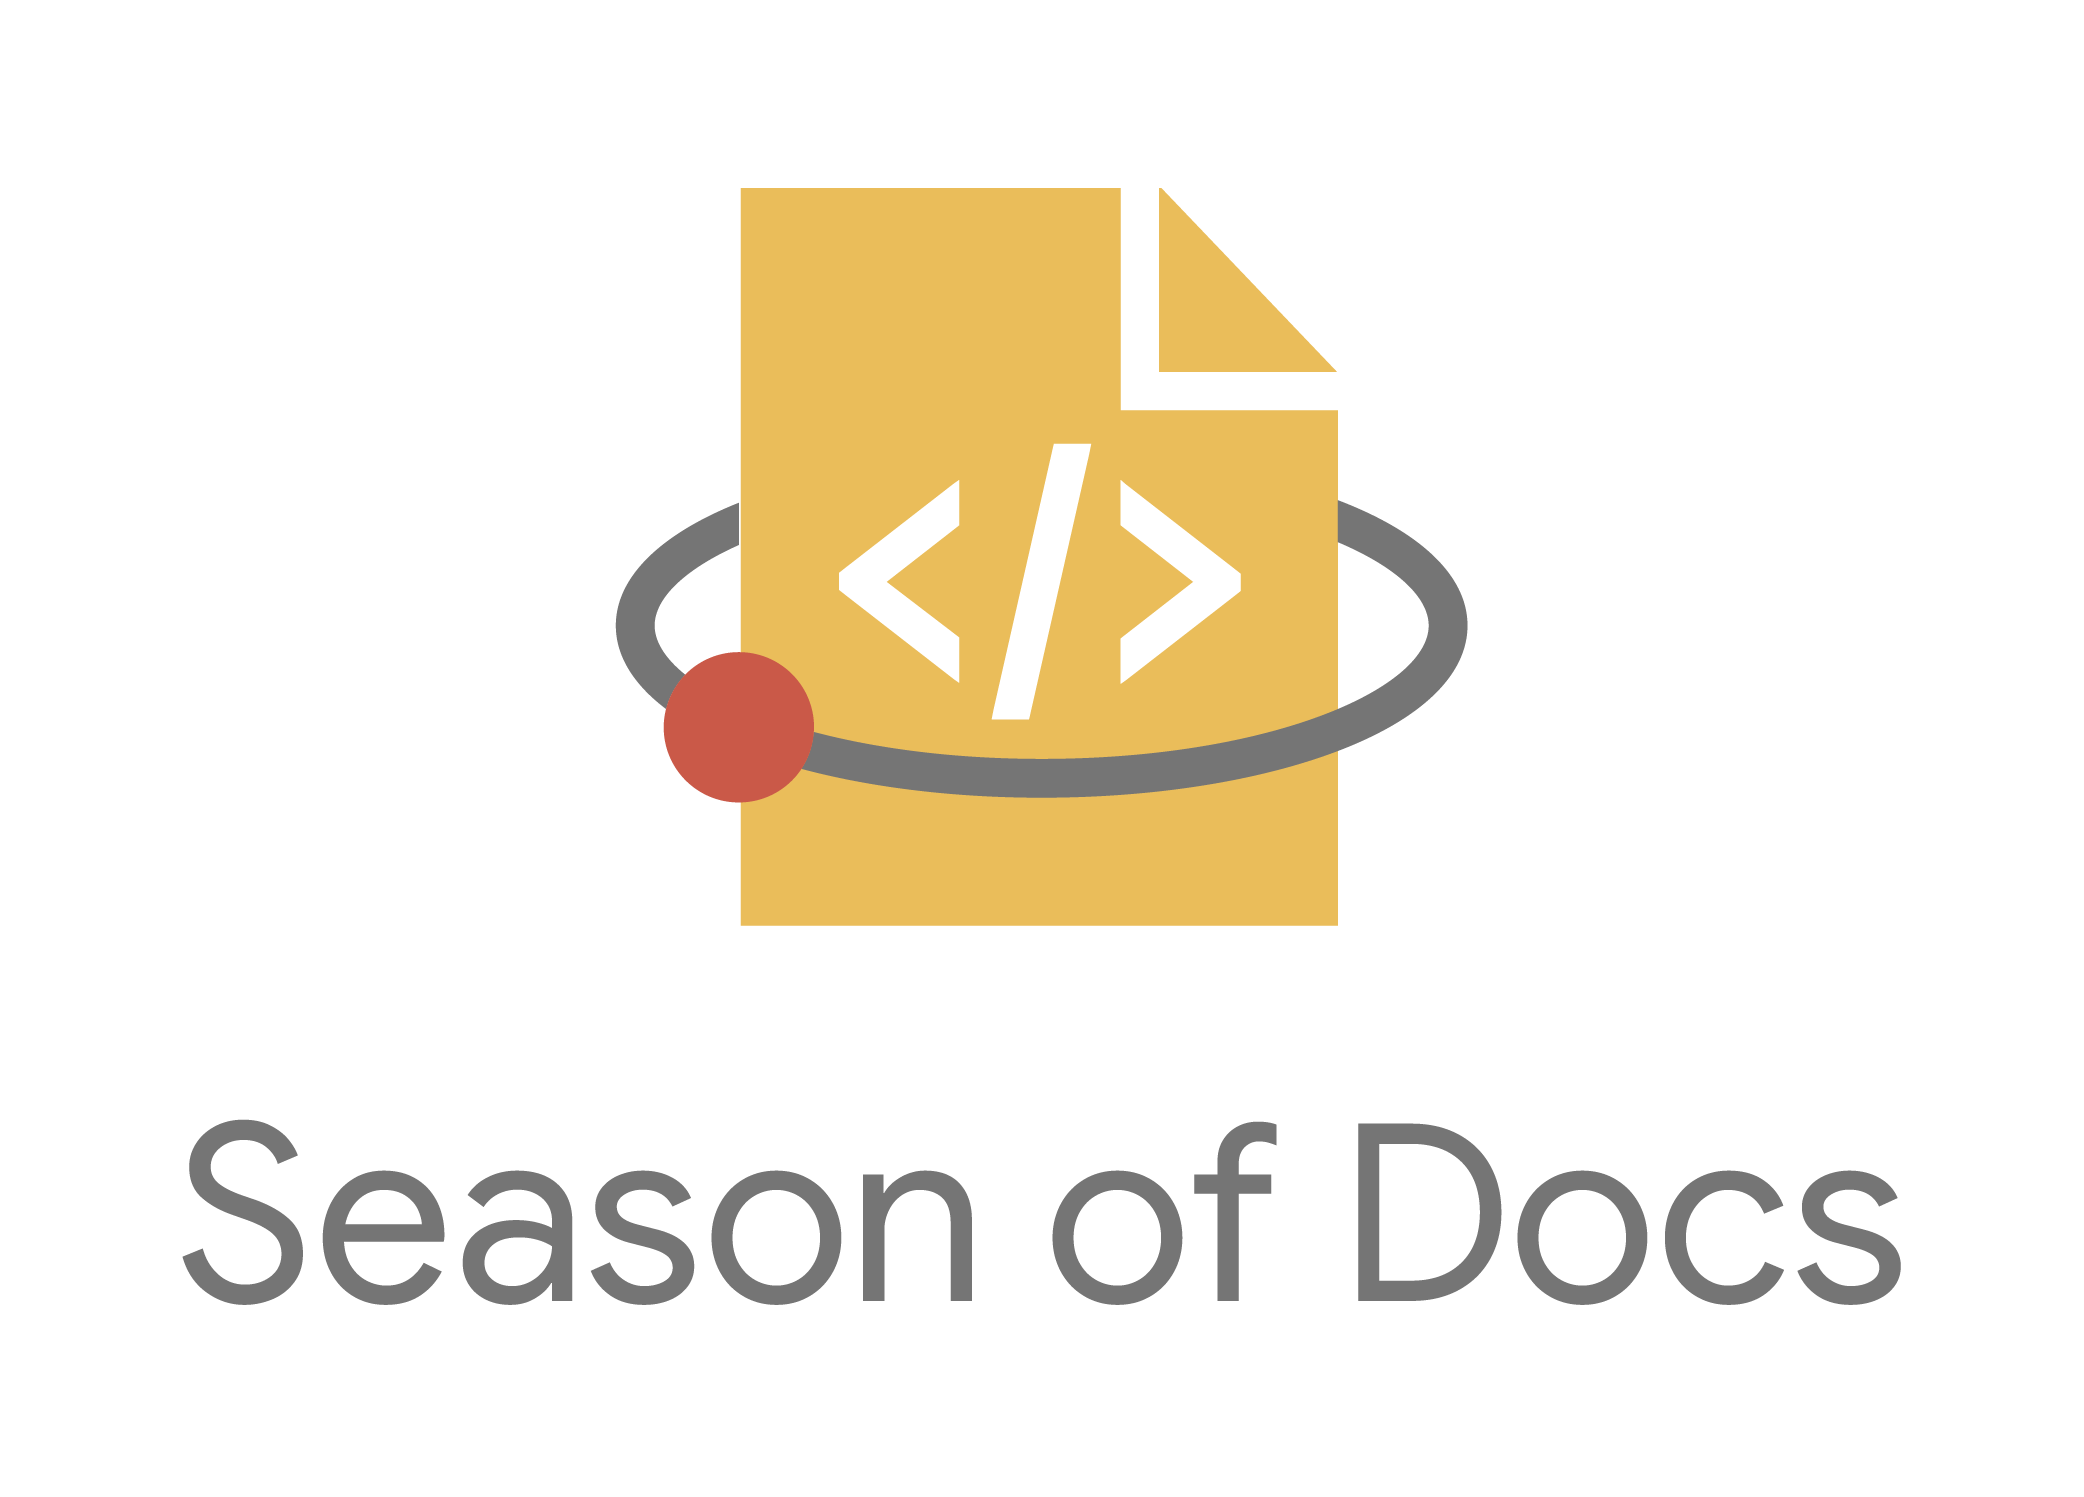 Google Season of Docs 2021 logo